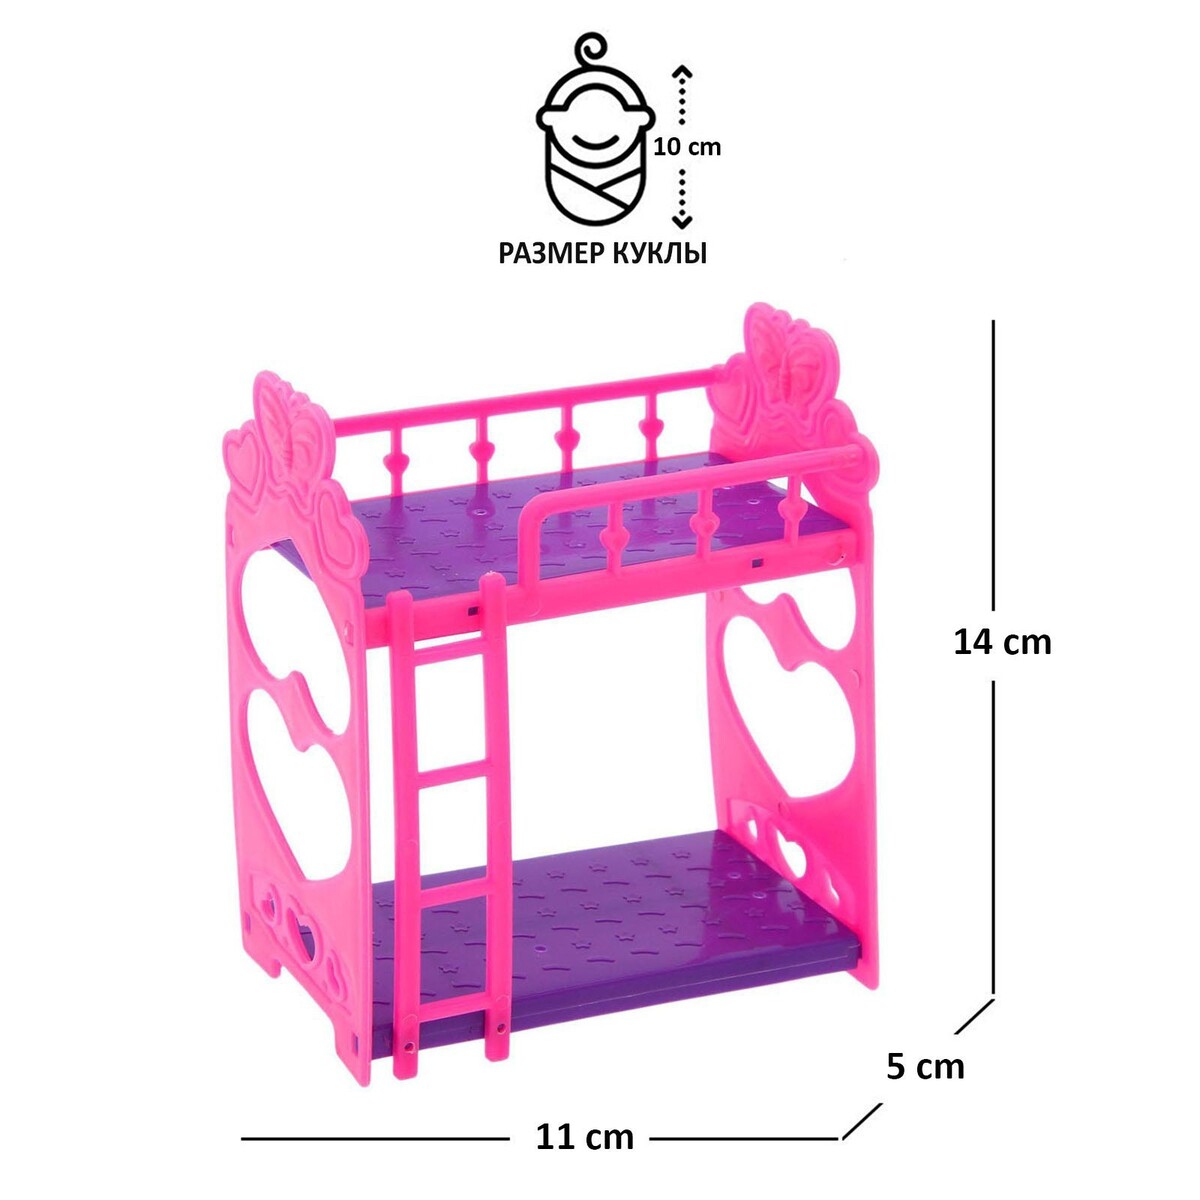 Аксессуары для кукол: кроватка двухъярусная этажерка двухъярусная 19 х 25 см maxwell